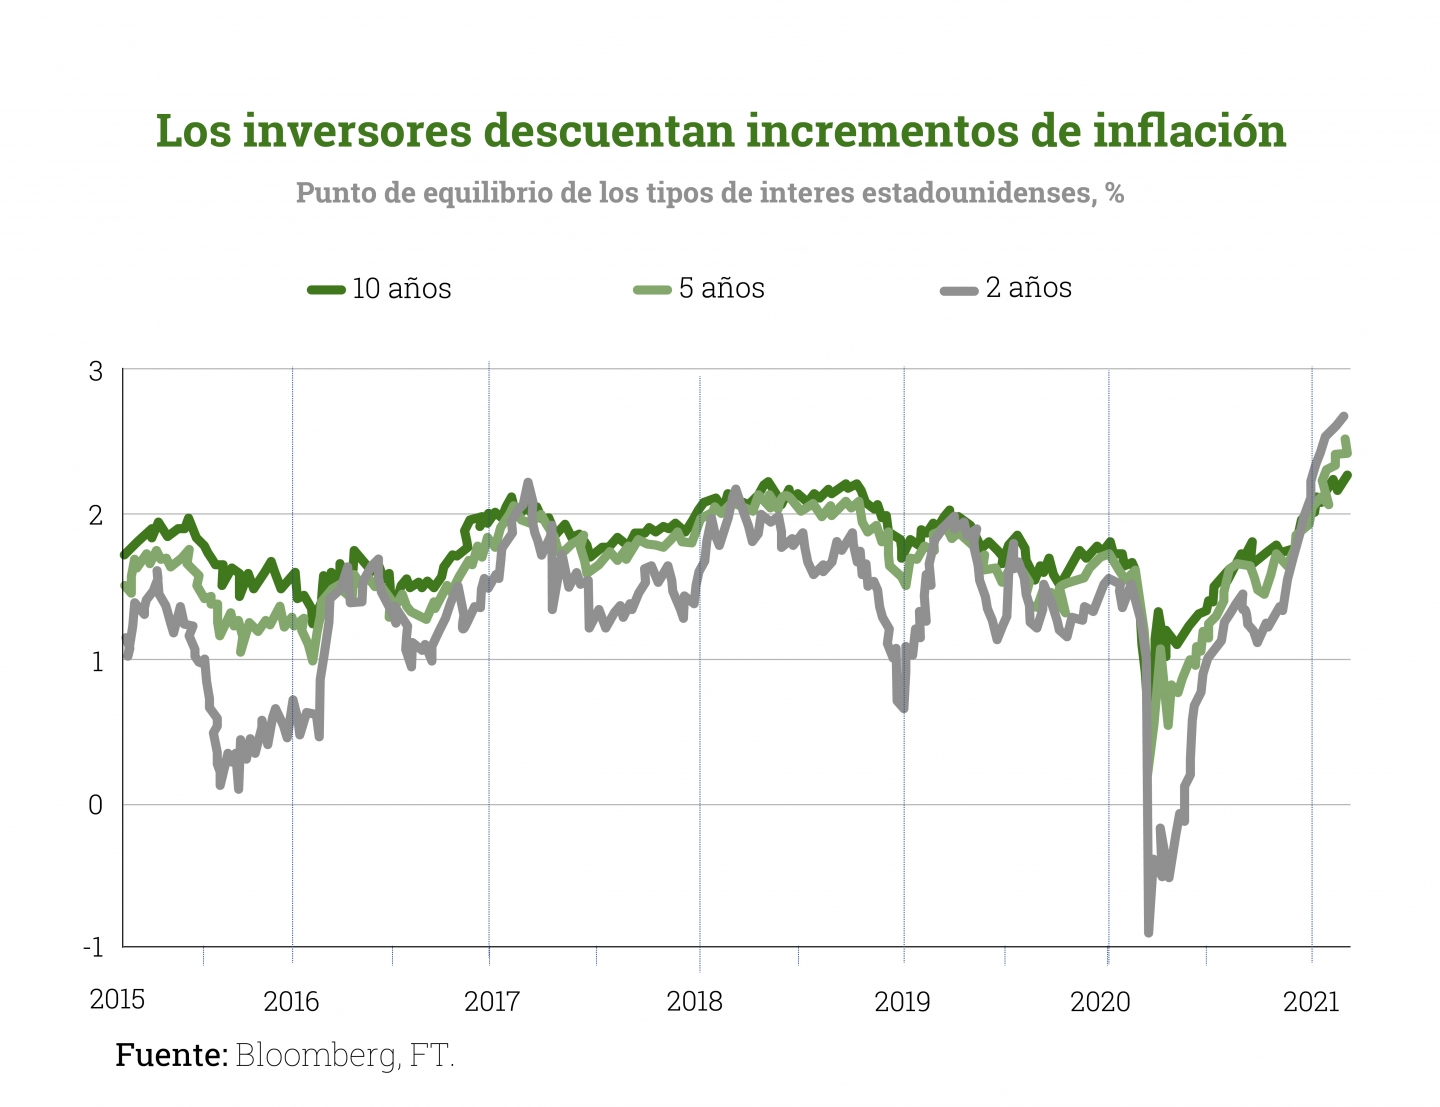 INFLACION-inversiones-descuentan-incrementos-inflacion